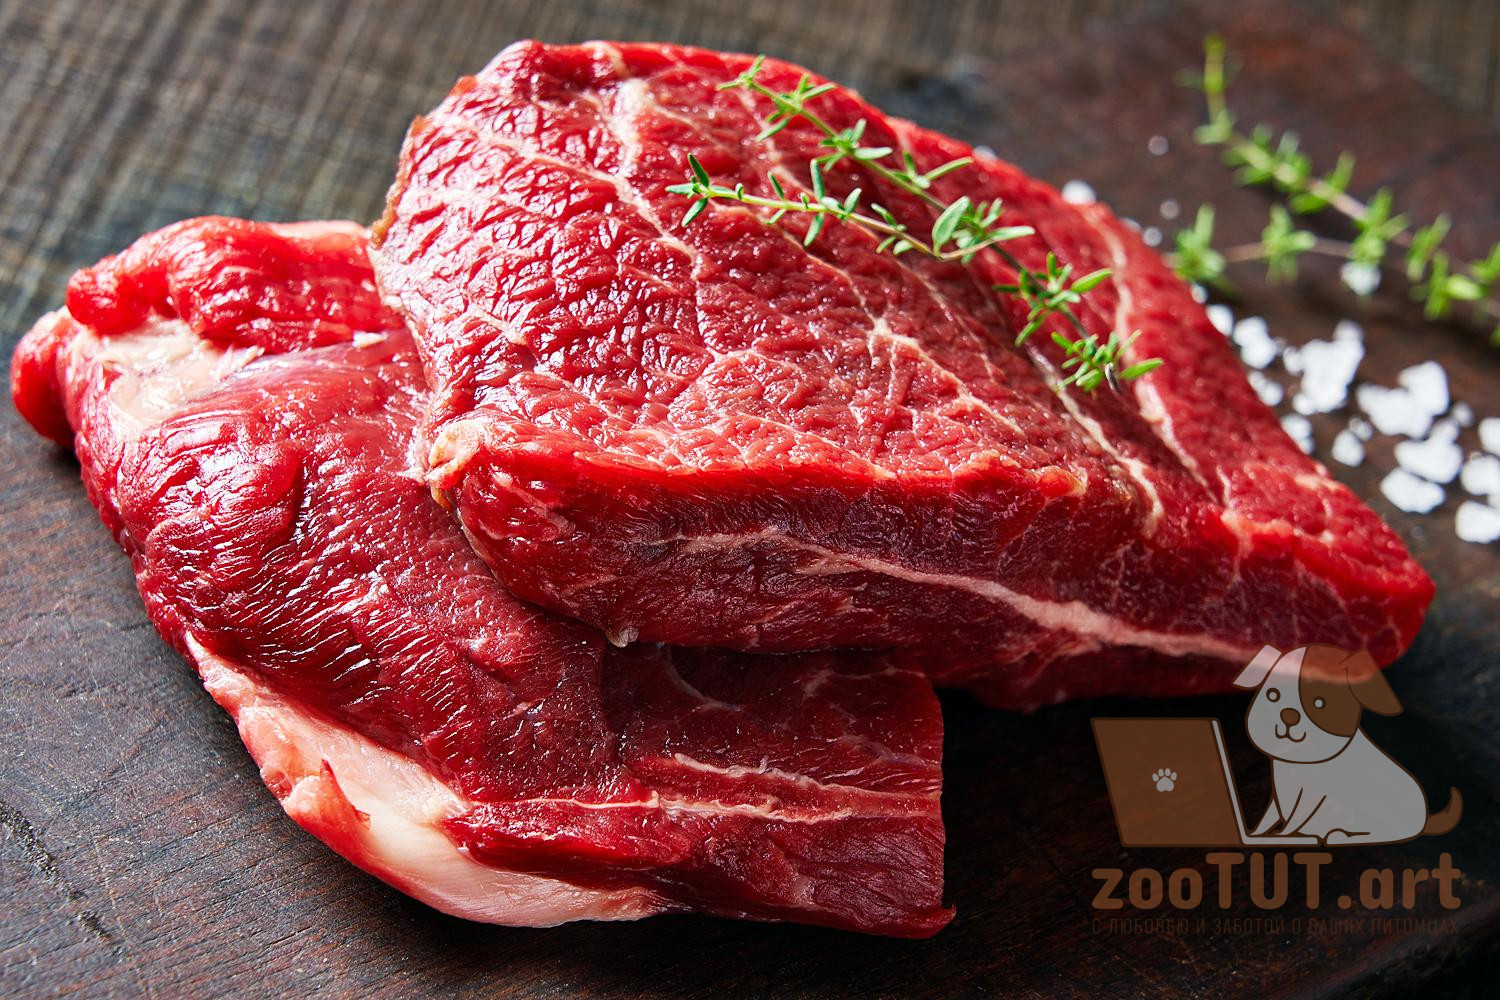 Meat cutting. Shoulder tender стейк. Трава для мяса. Картинки оттаявшего мяса. Made for meat.